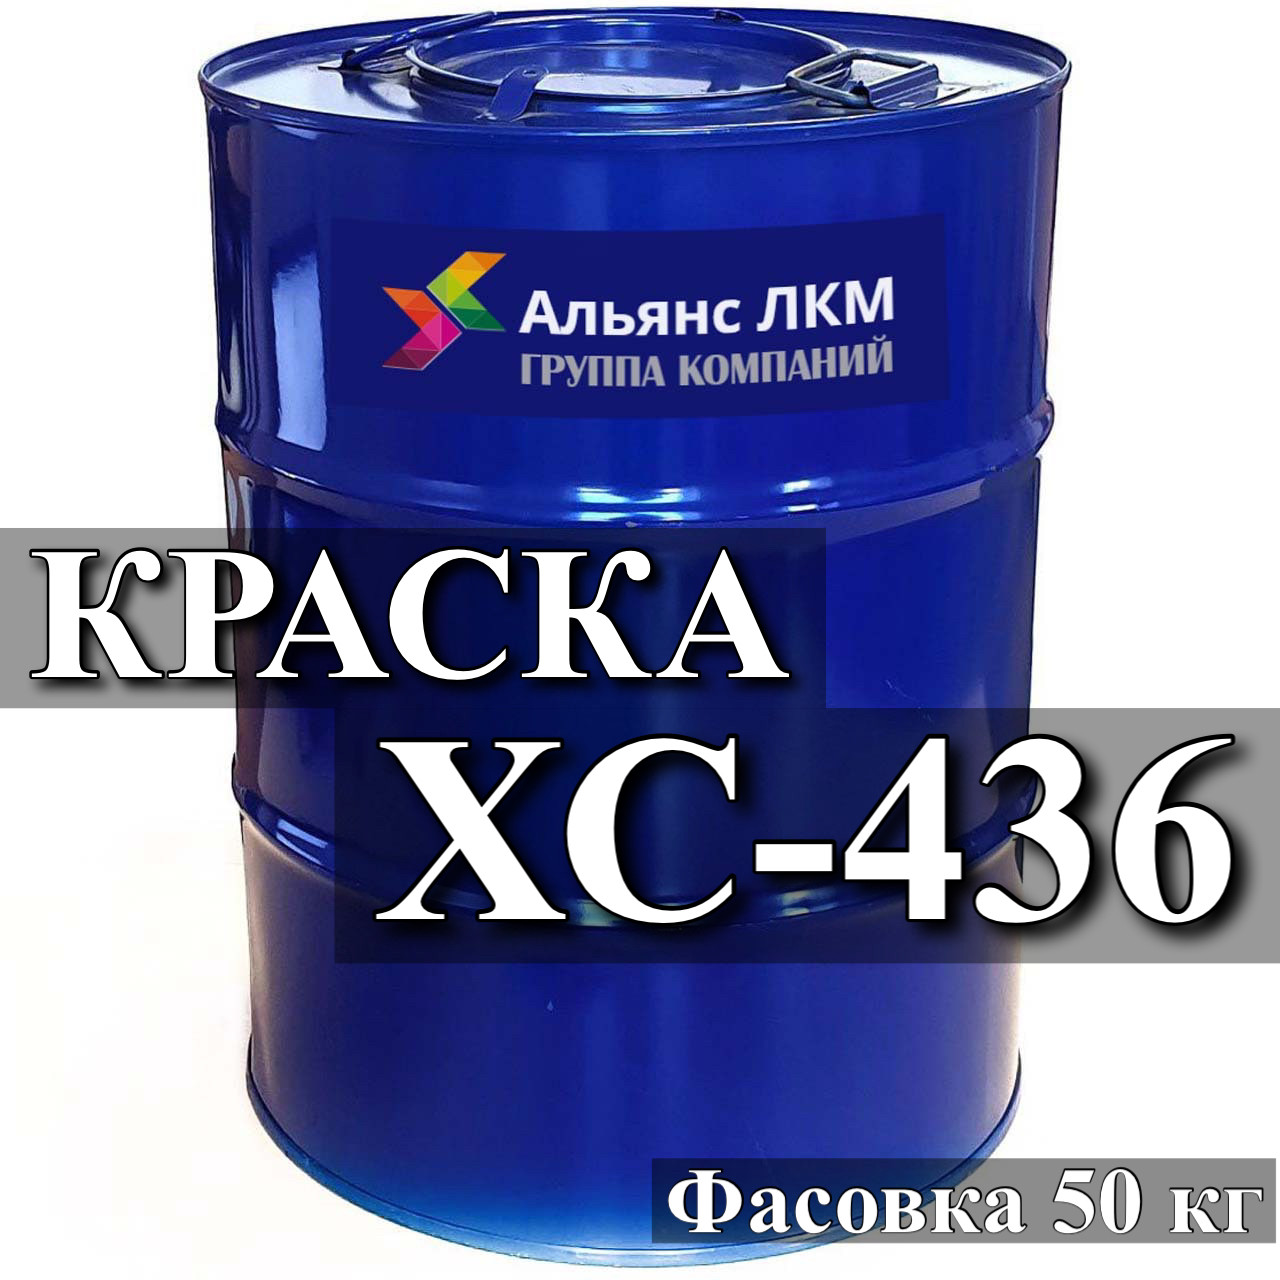 ХС-436 емаль для захисту від корозії району ПВЛ та підводної частини корпусів суден купити Київ